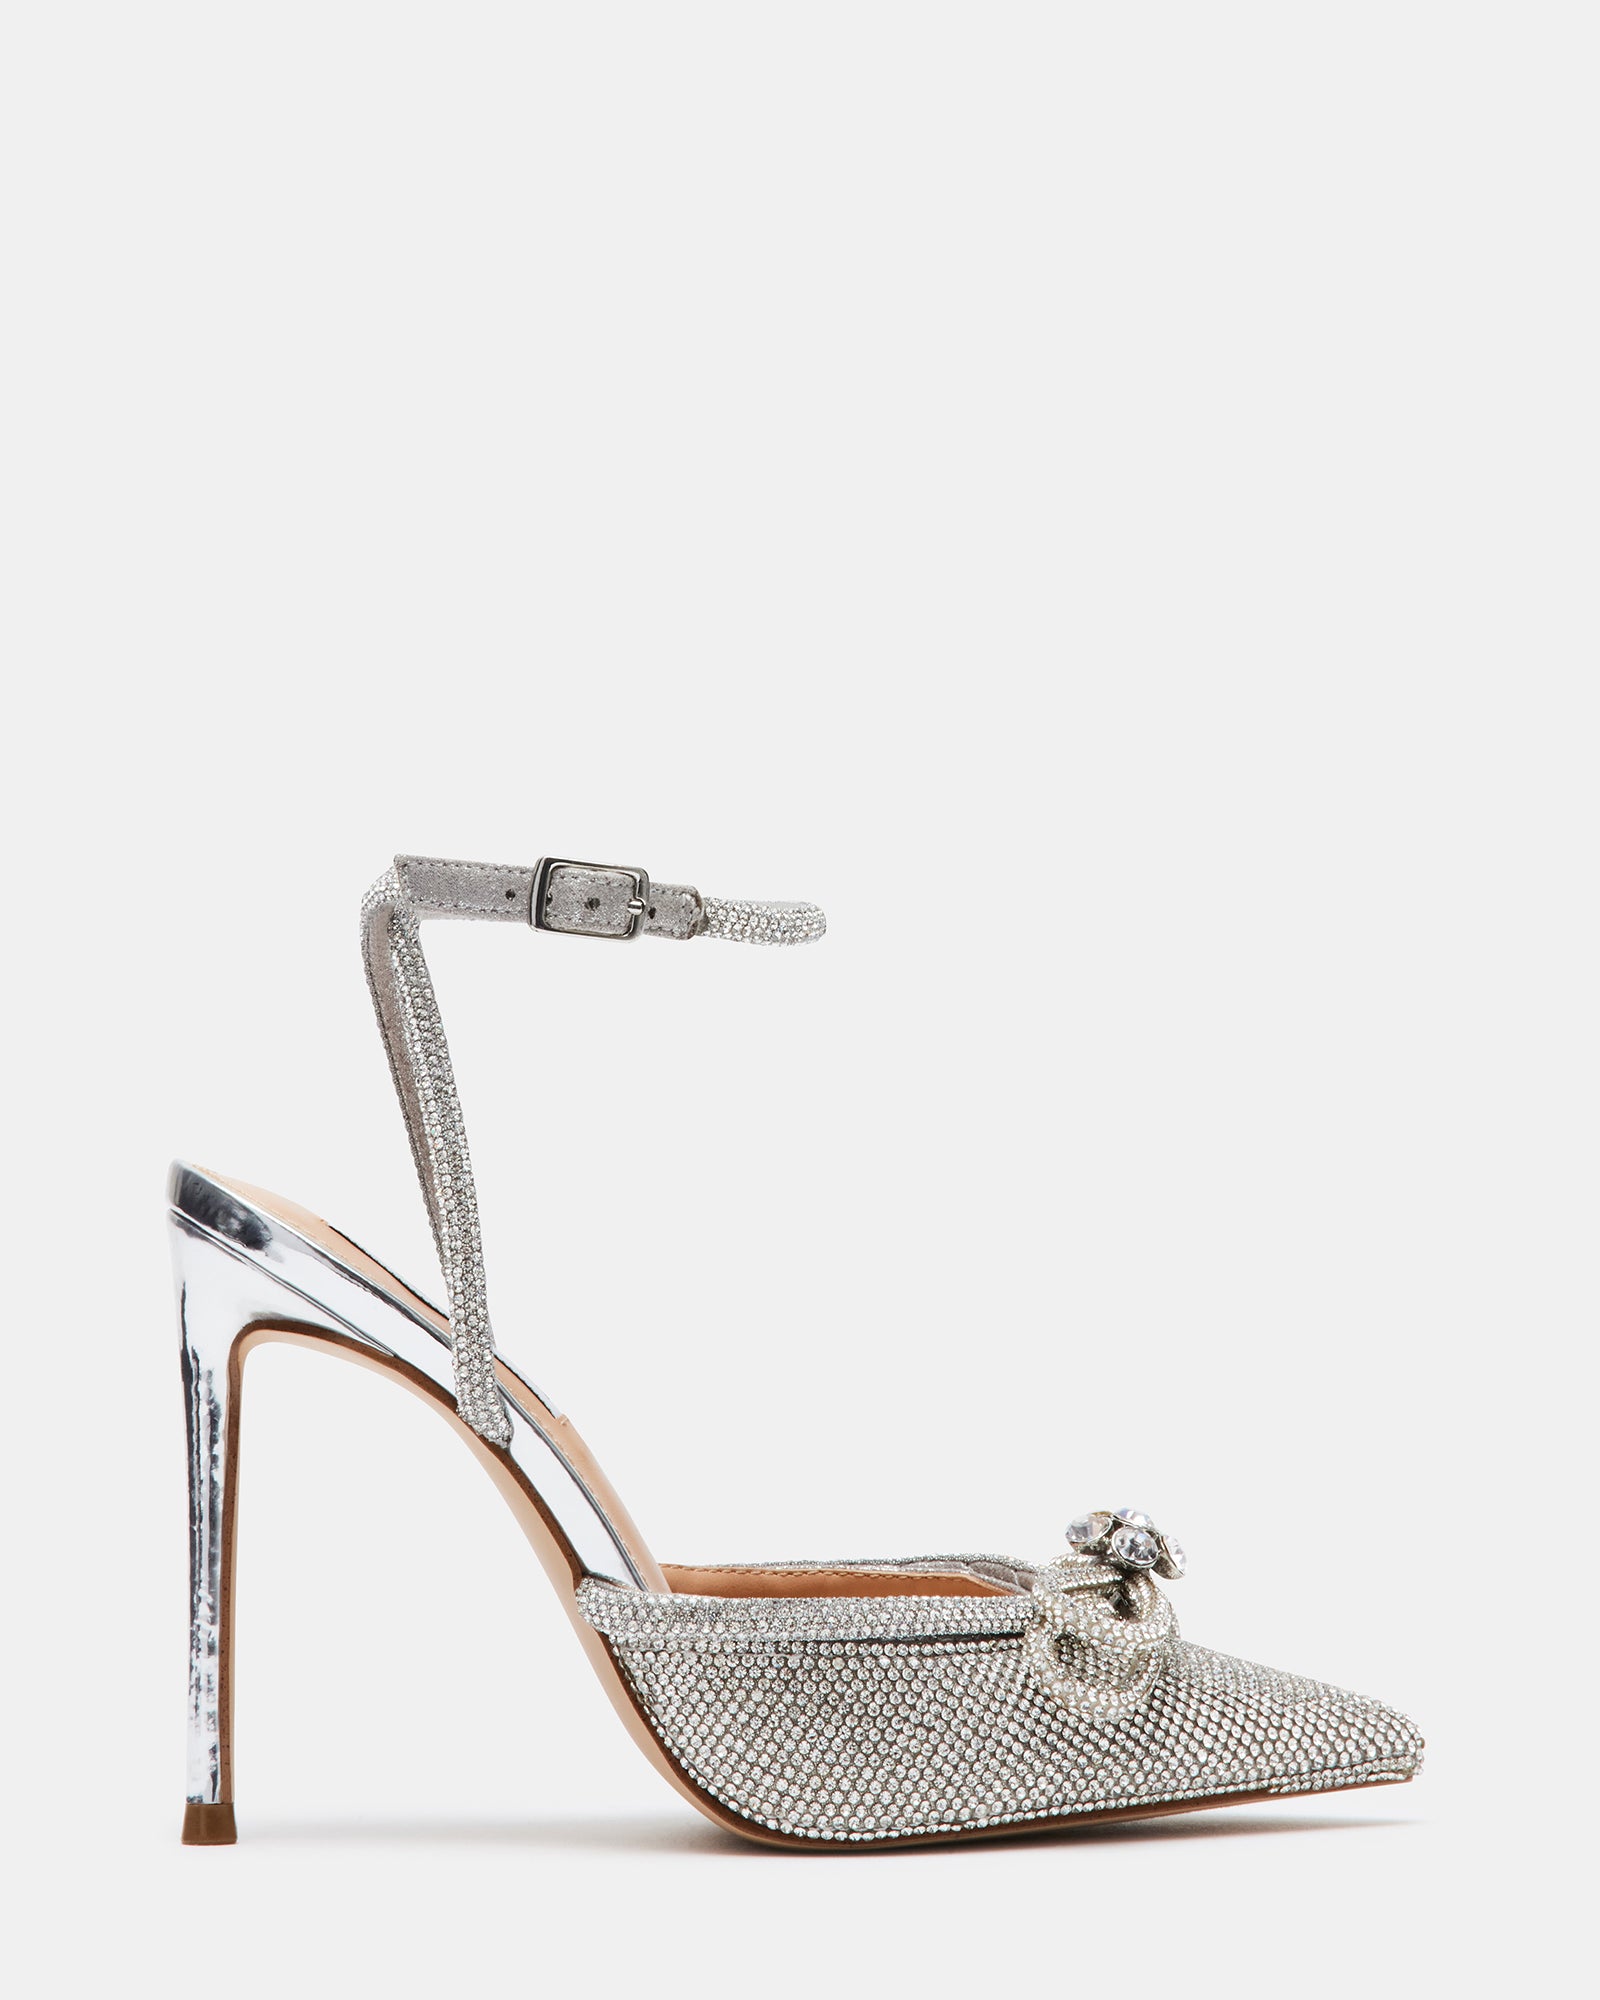 love 6 inch heels : r/PeepToeHeels